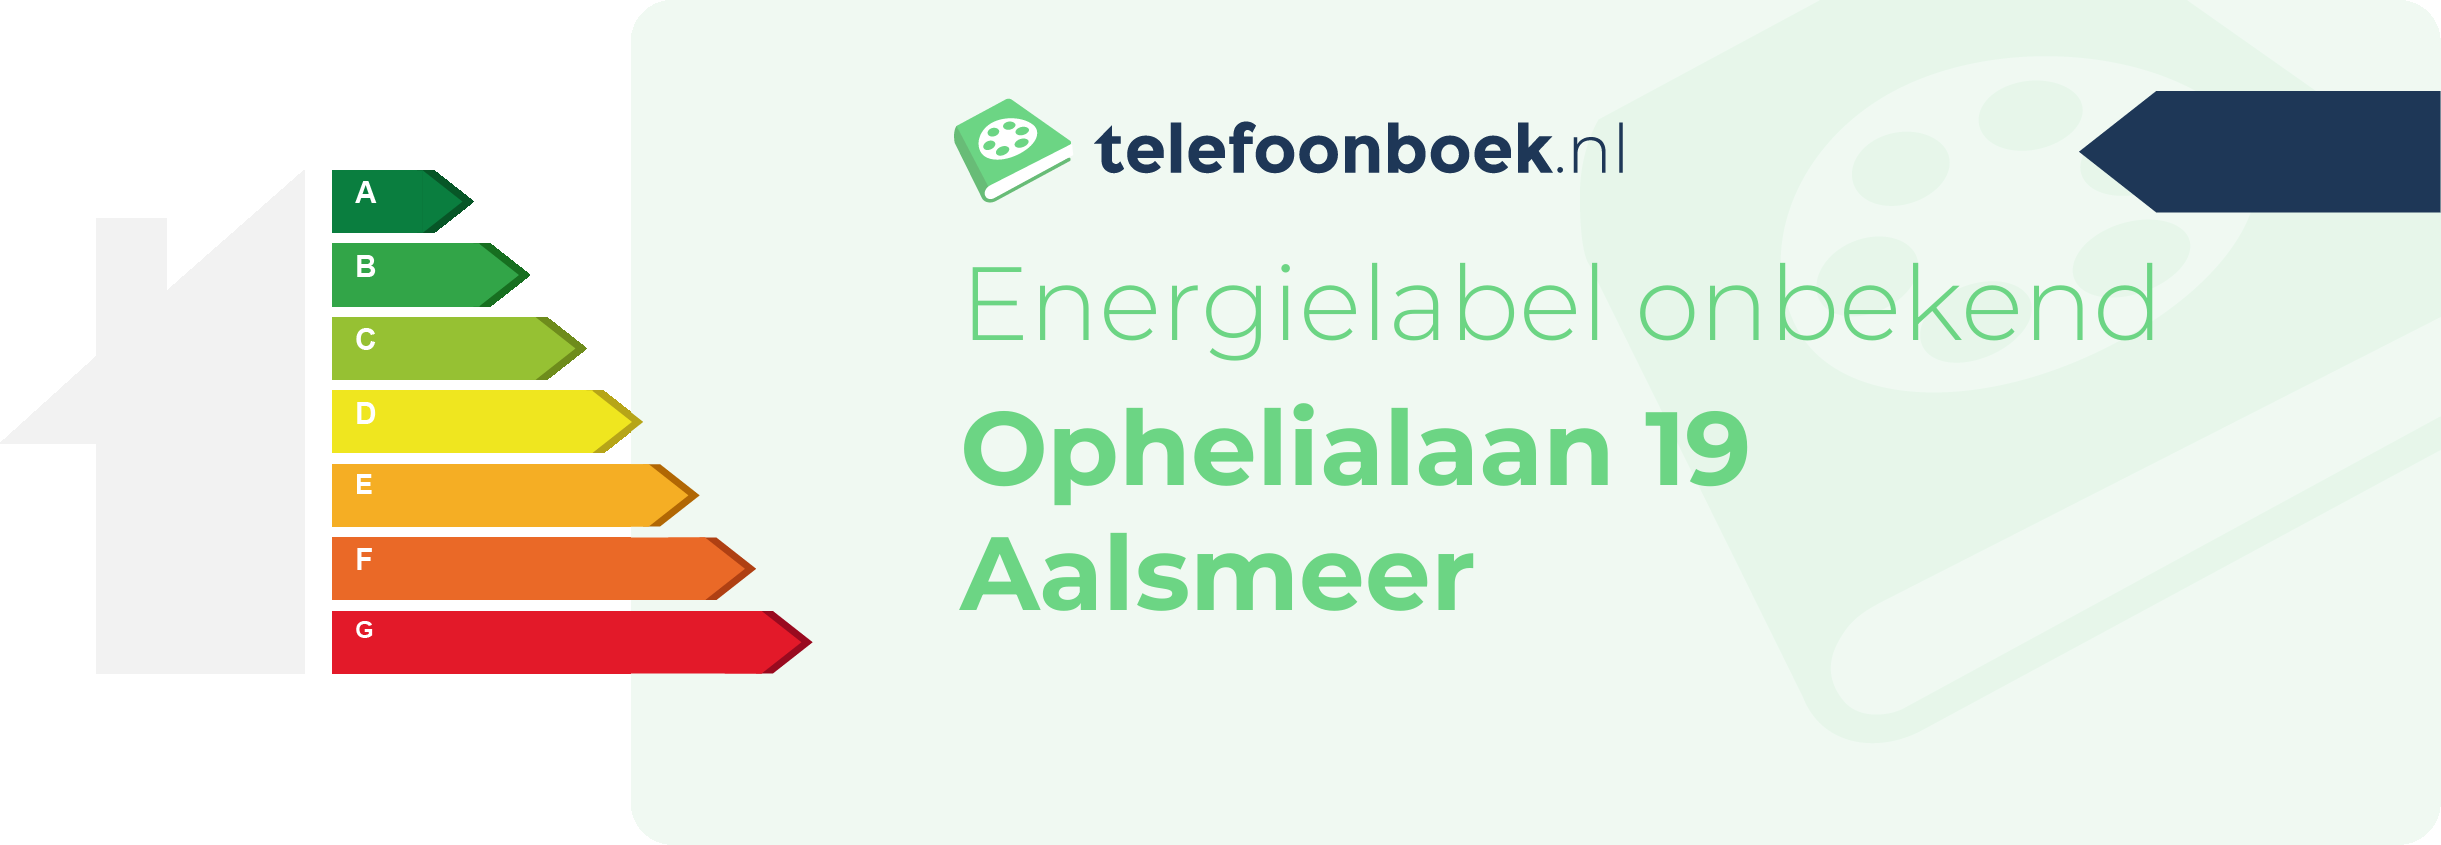 Energielabel Ophelialaan 19 Aalsmeer